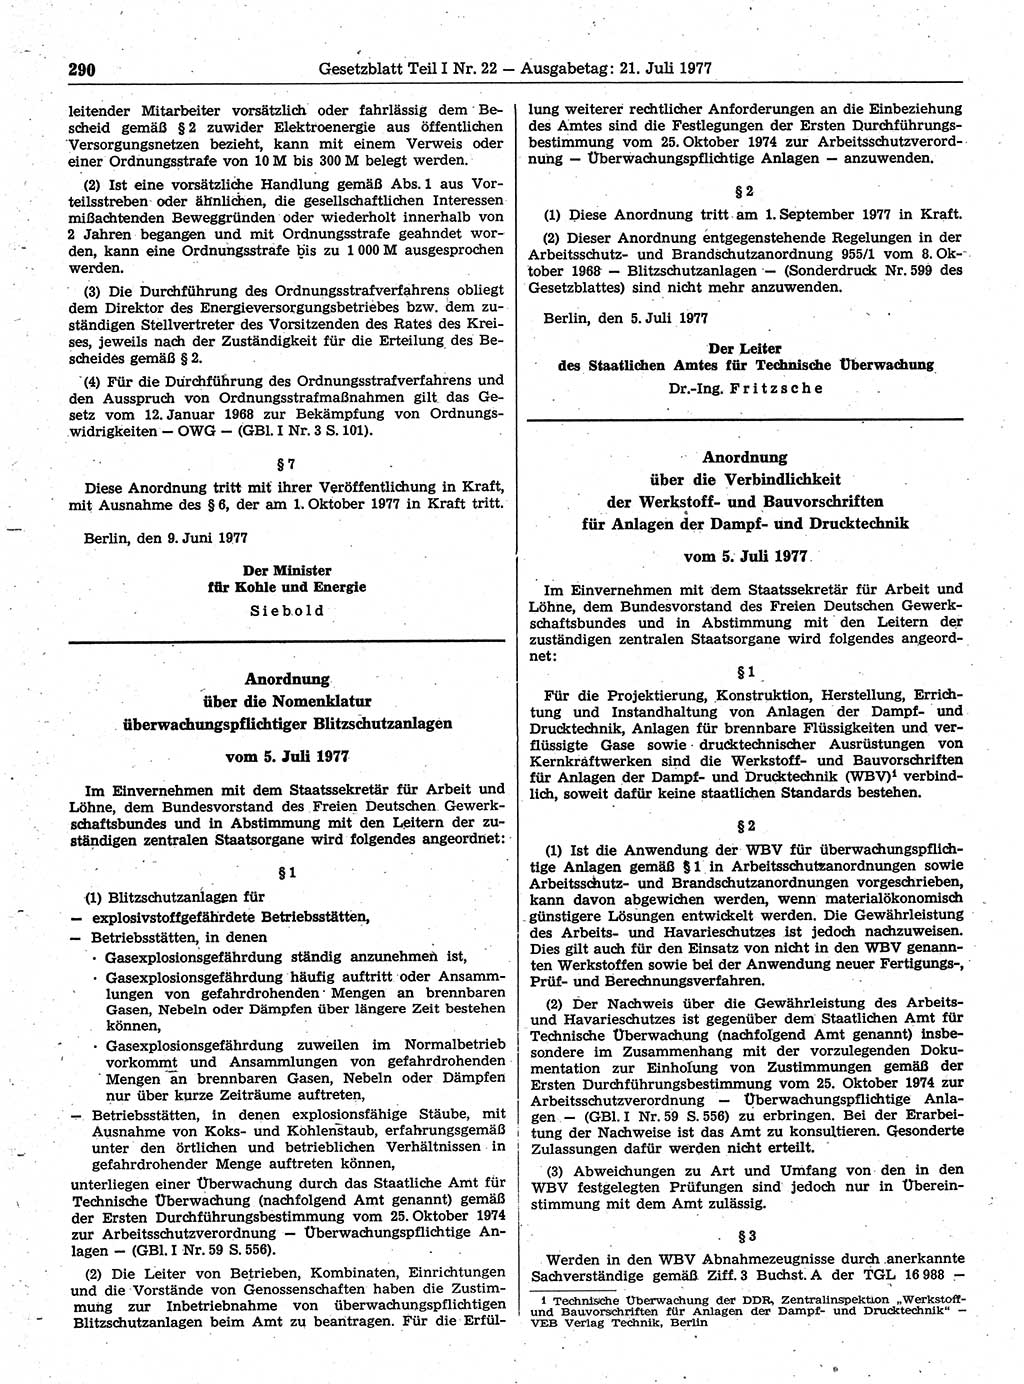 Gesetzblatt (GBl.) der Deutschen Demokratischen Republik (DDR) Teil Ⅰ 1977, Seite 290 (GBl. DDR Ⅰ 1977, S. 290)